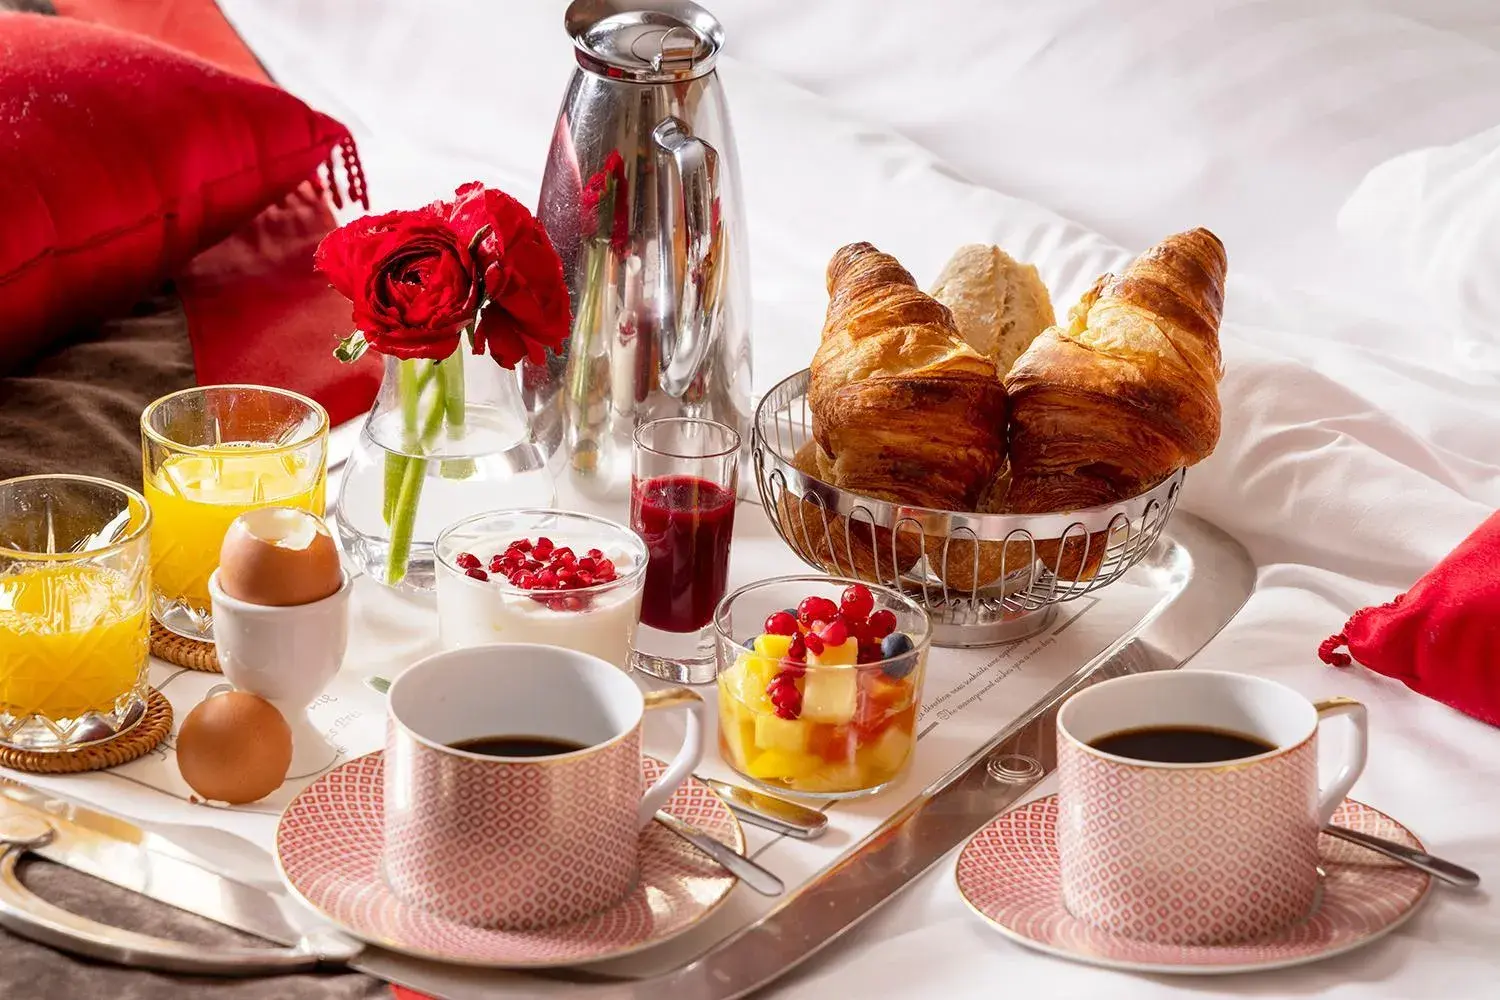 Breakfast in Hotel De Seine